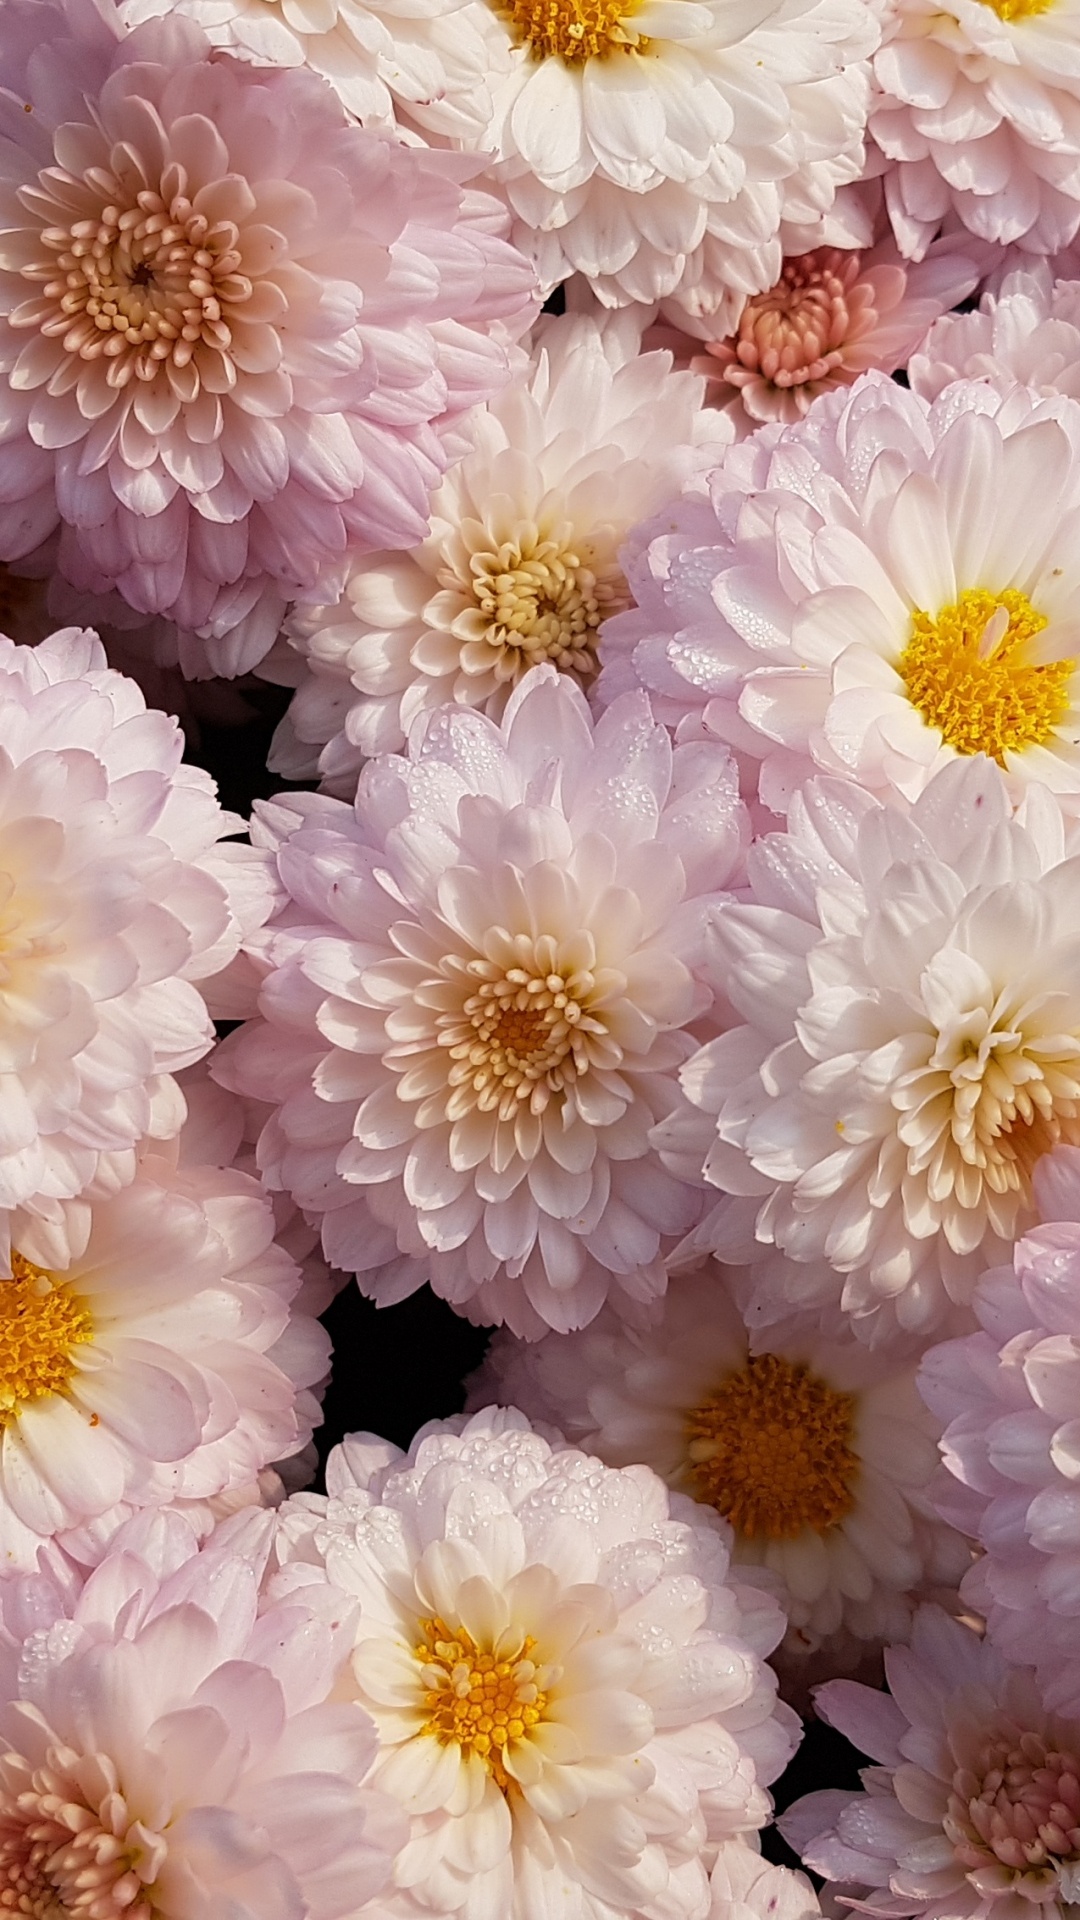 Flores Blancas y Moradas en Fotografía de Cerca. Wallpaper in 1080x1920 Resolution